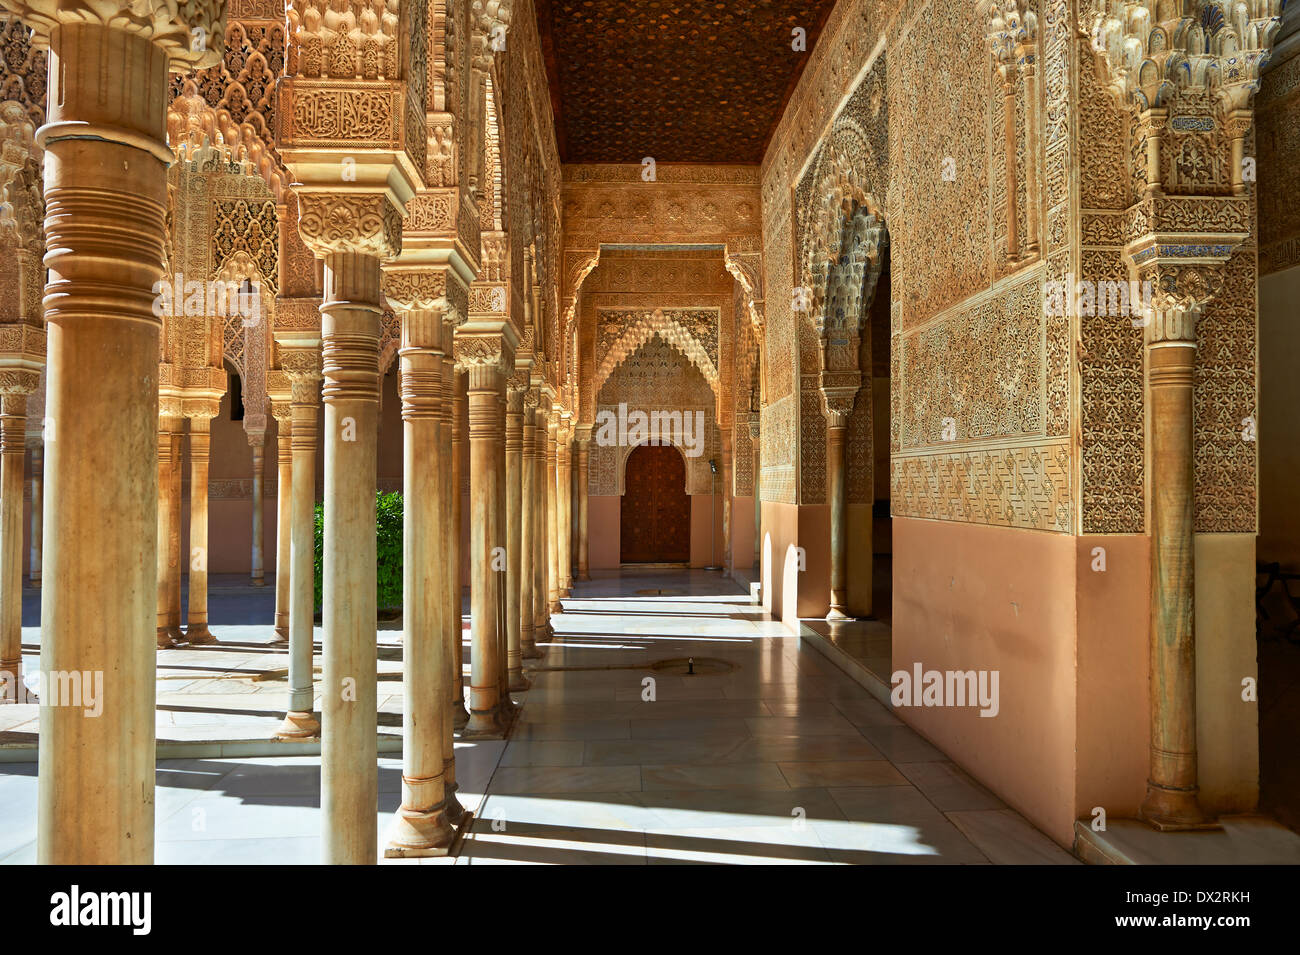 Arabesque maurische Architektur der Patio de los Leones (Hof der Löwen) Palacios Nazaries, Alhambra. Granada, Spanien Stockfoto